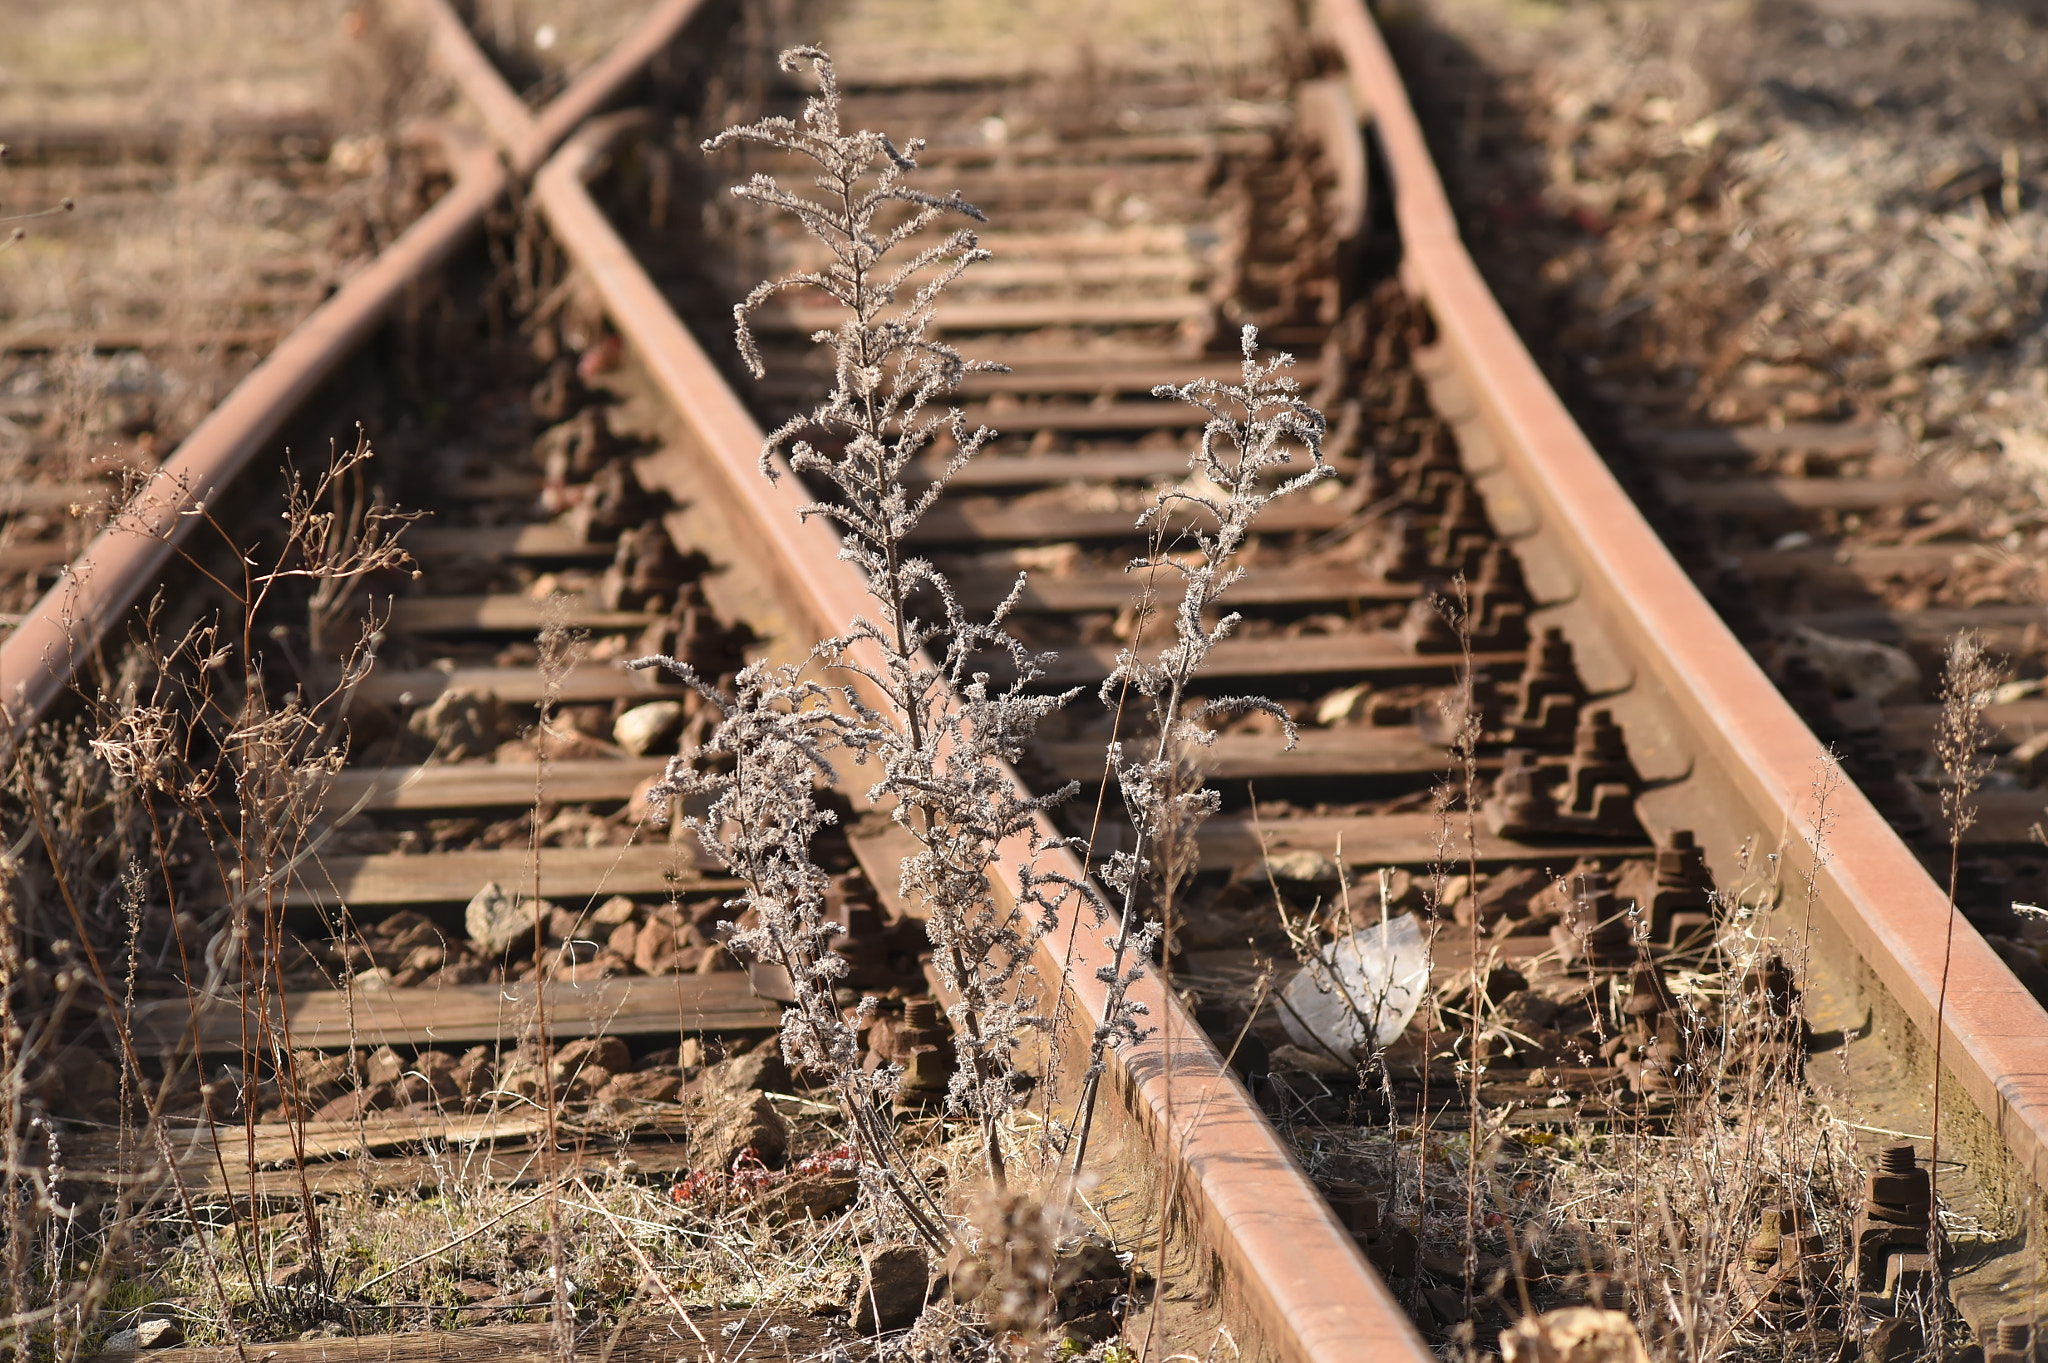 AF Zoom-Nikkor 70-210mm f/4 sample photo. Rail tracks photography